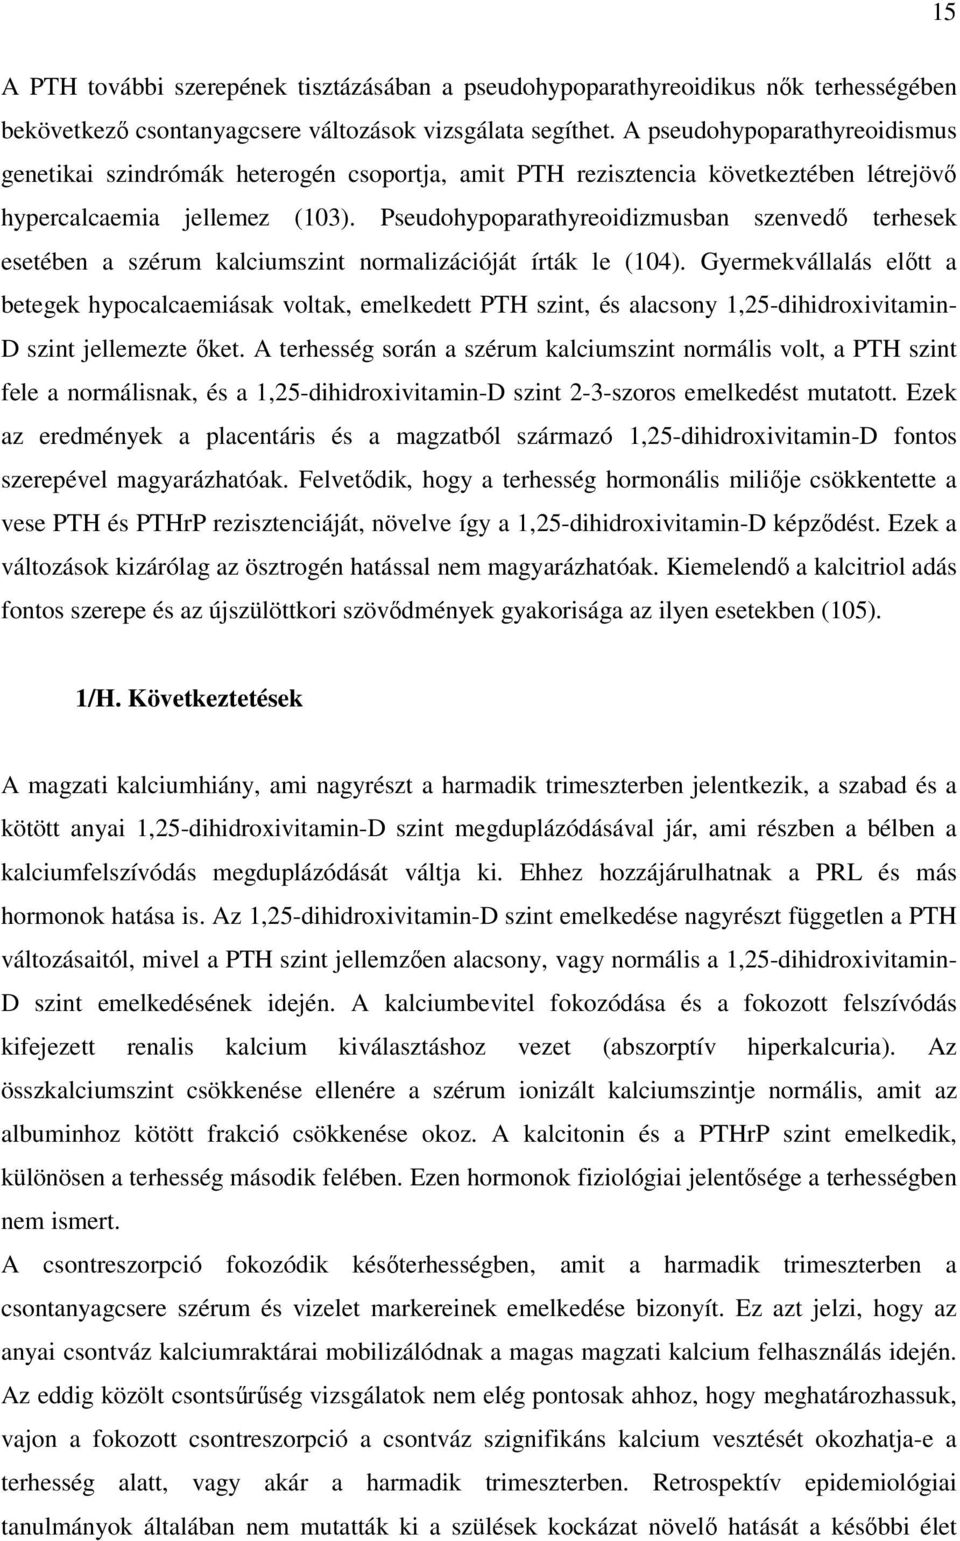 Pseudohypoparathyreoidizmusban szenvedı terhesek esetében a szérum kalciumszint normalizációját írták le (104).